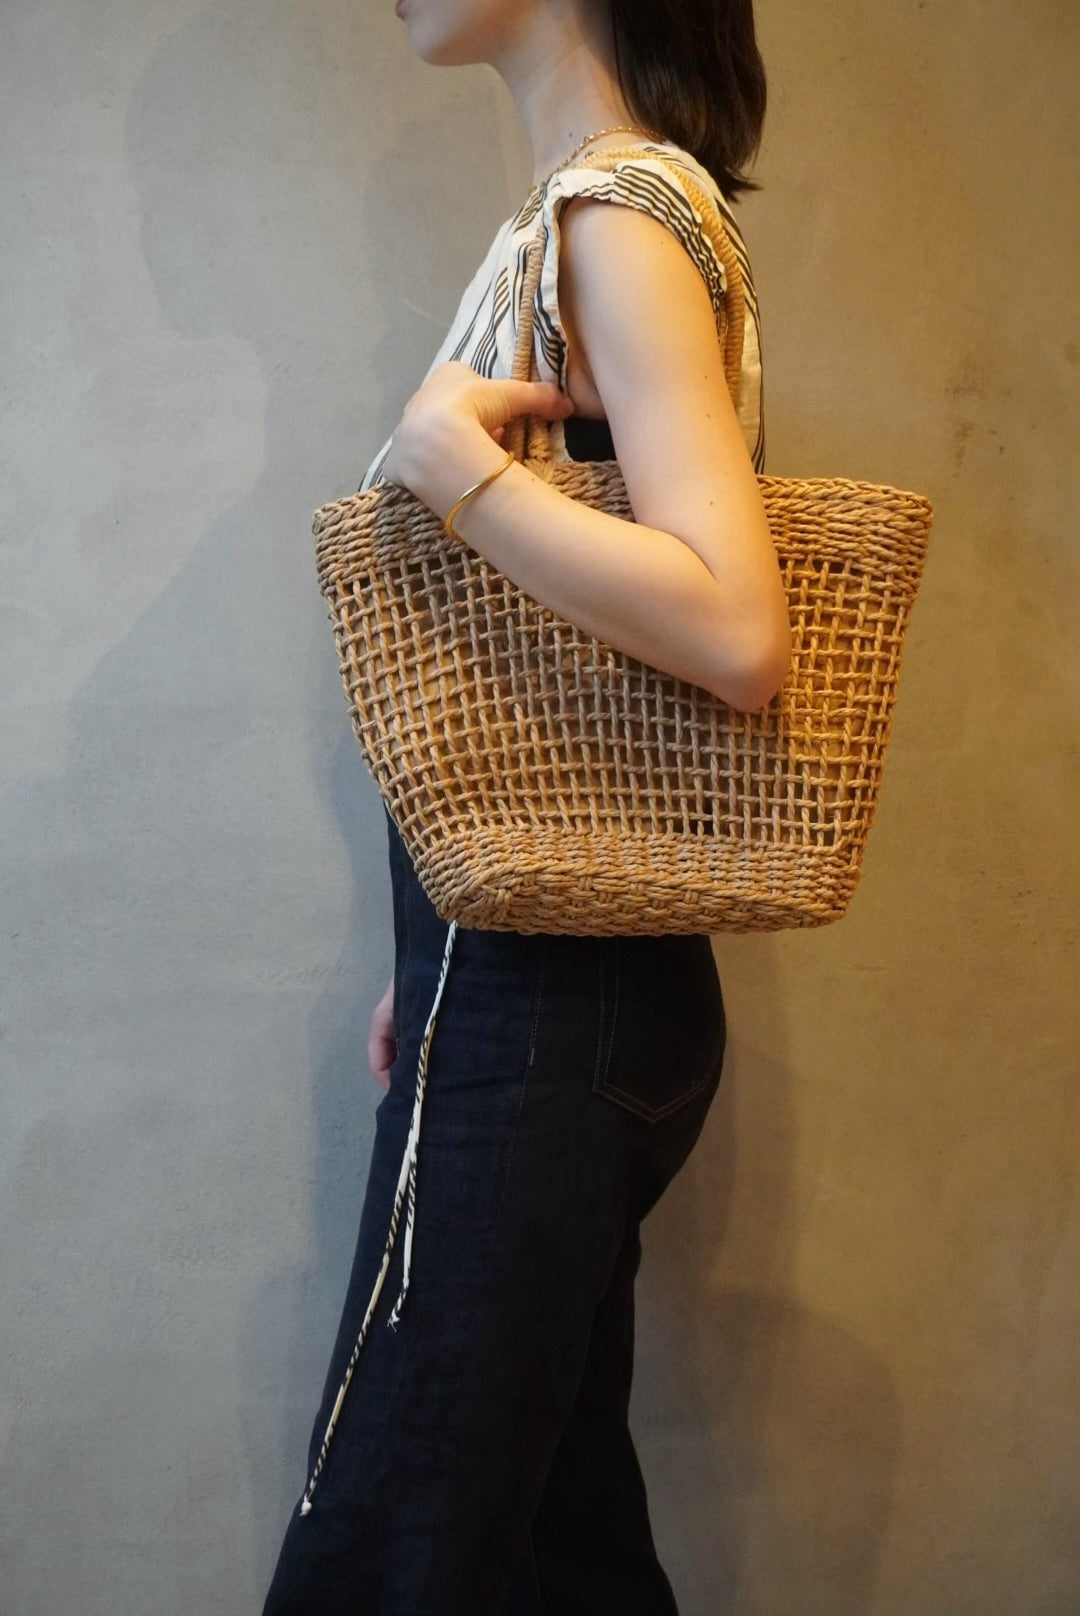 basket bag